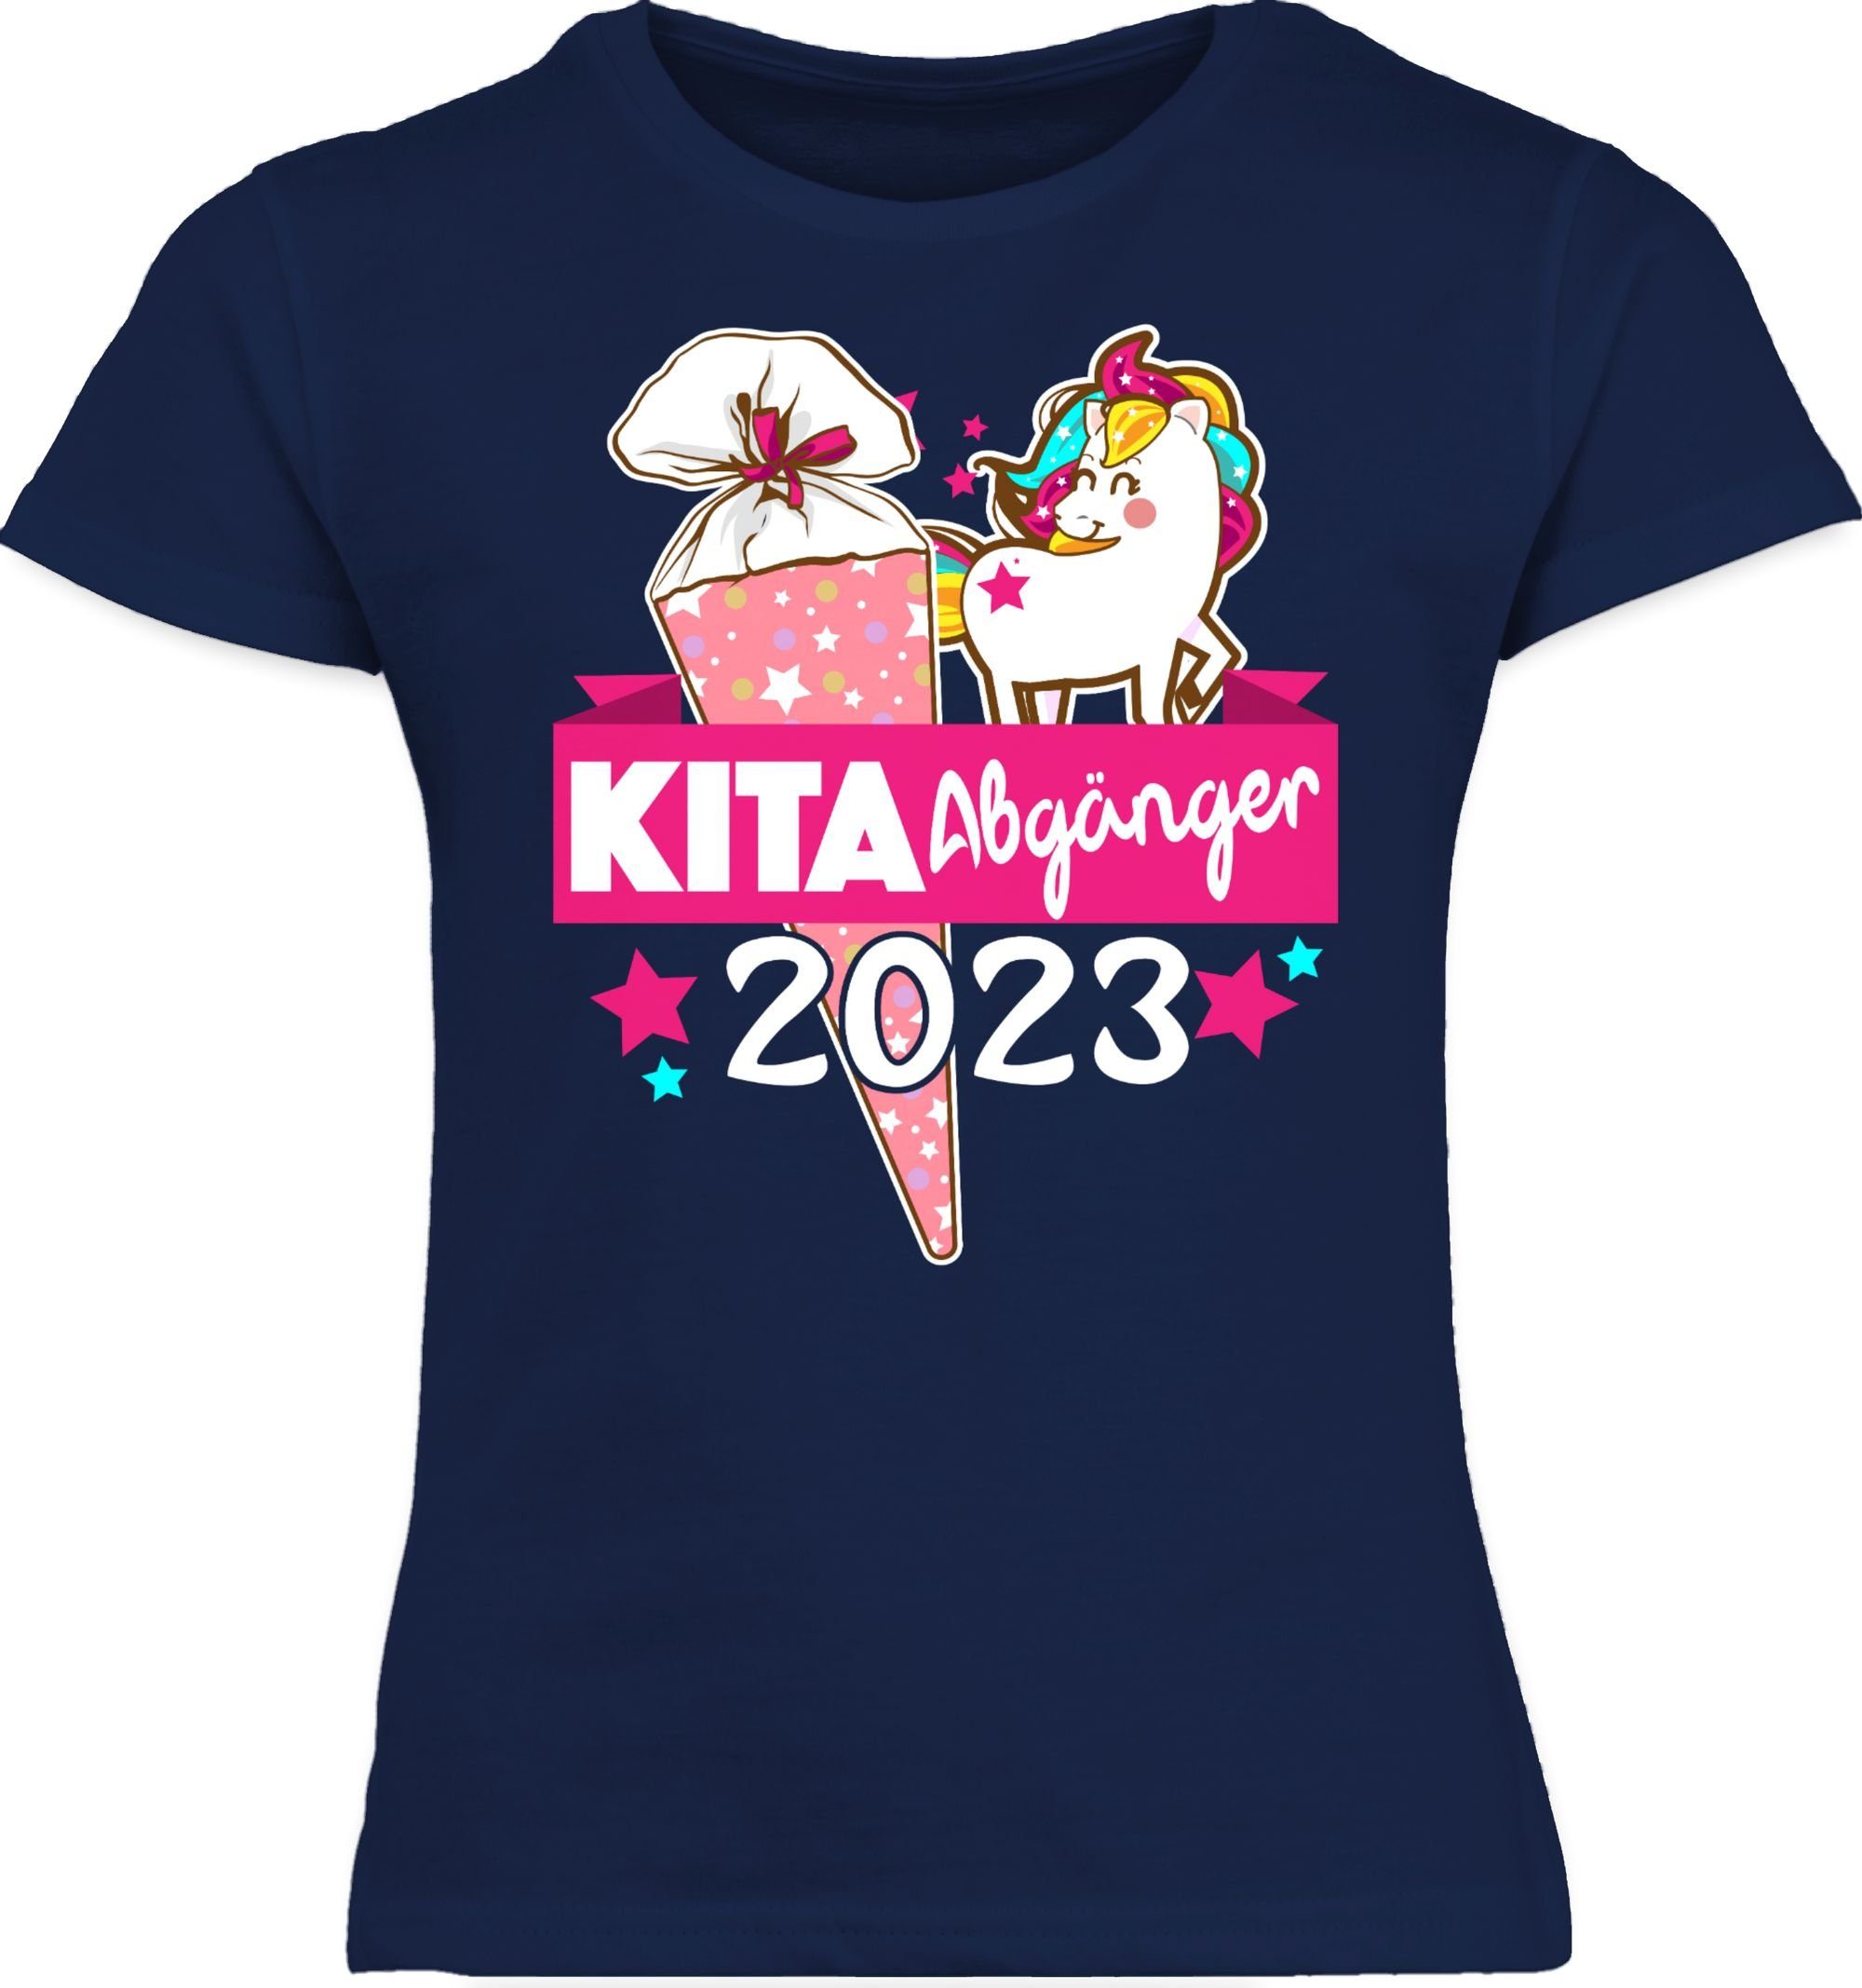 Shirtracer T-Shirt Kita Abgänger 2023 - Einschulung Mädchen 1 Navy Blau